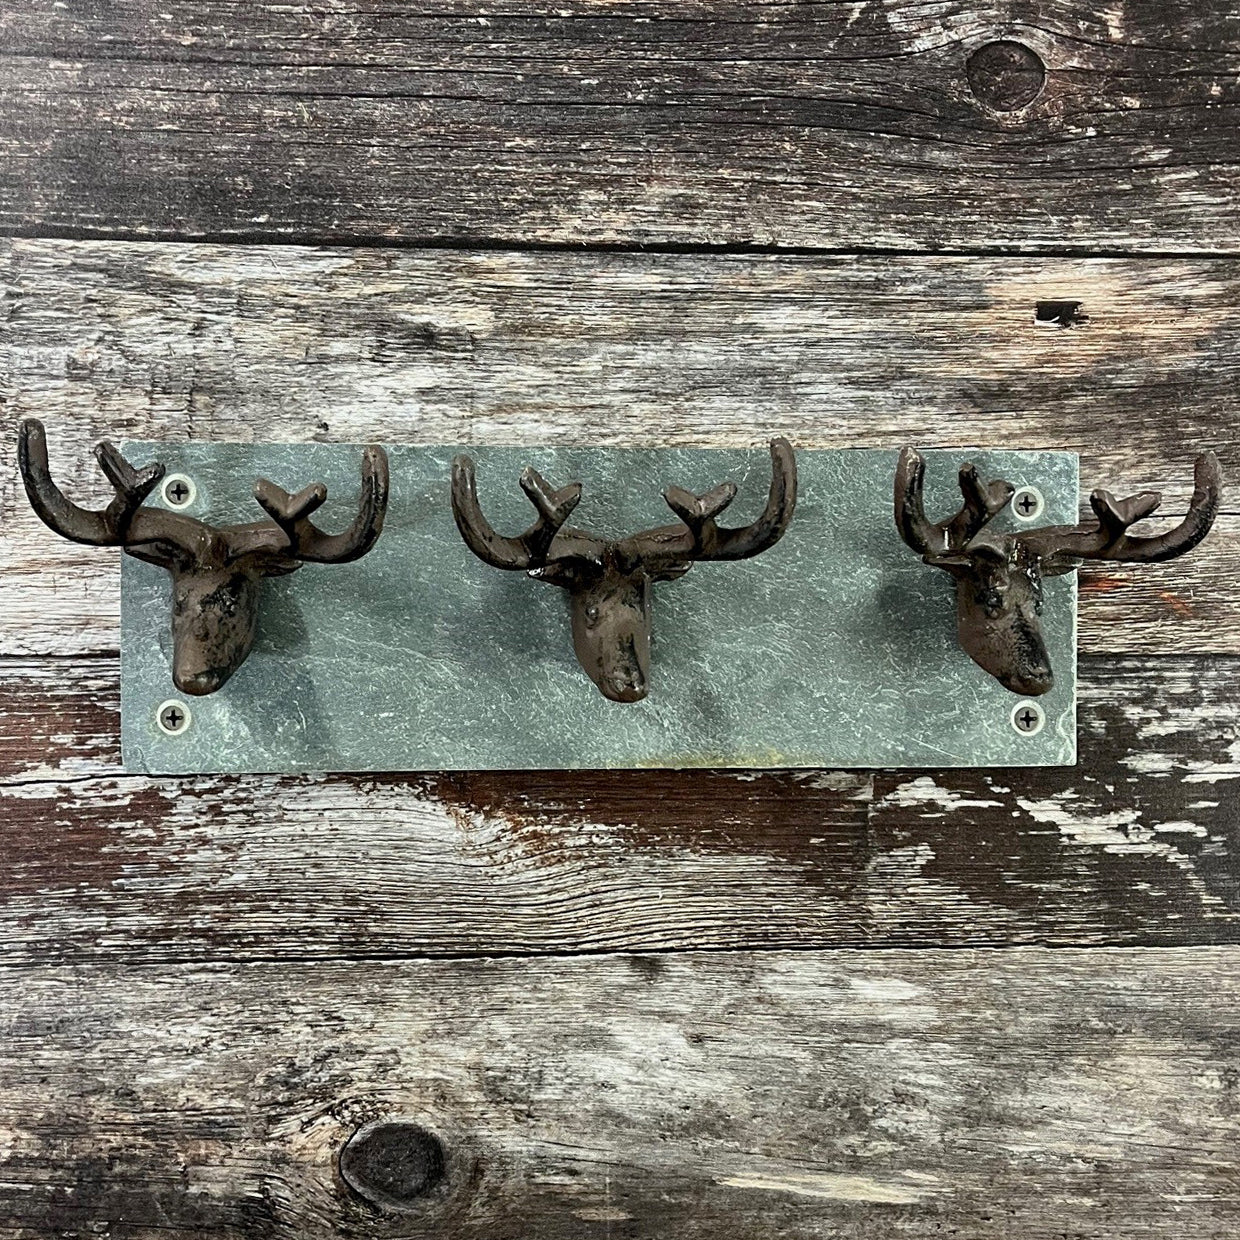 30GO Vintage Cast Iron Deer Antlers Wall Hooks Antler Decorative Hanger  w/Screws, Hook for Coats, Hats, Scarves, Keys